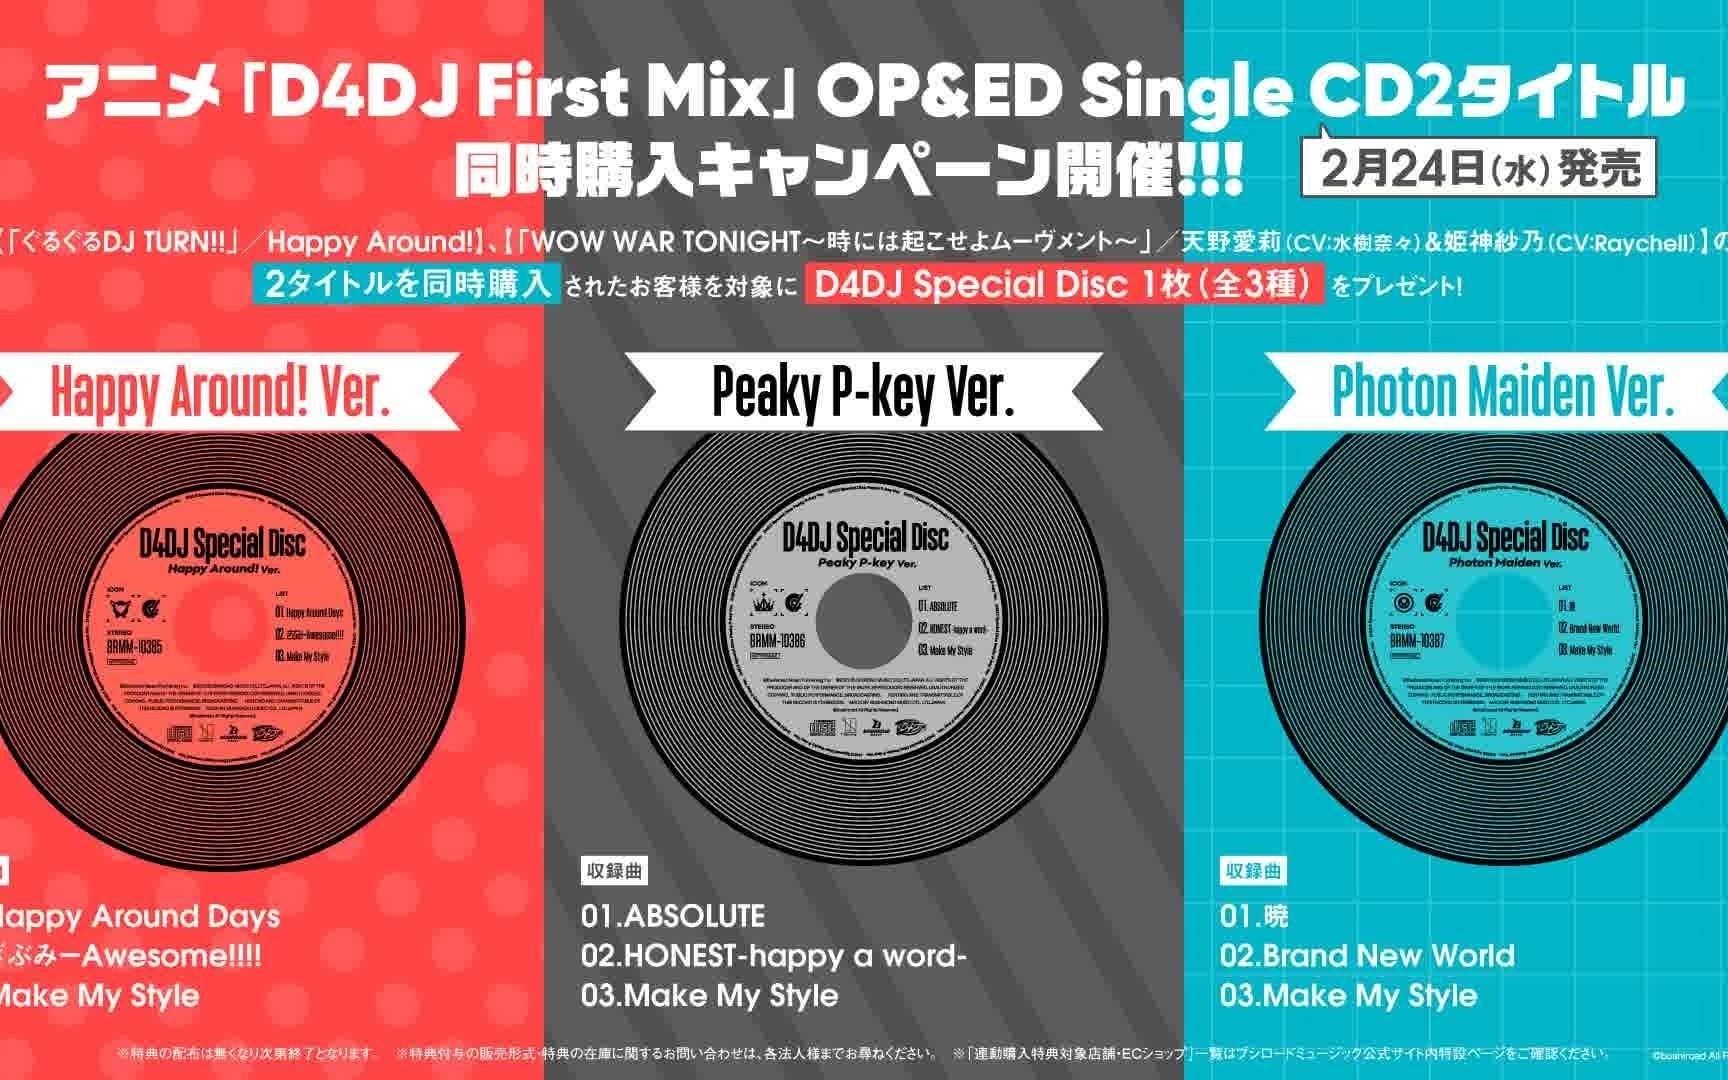 D4DJ First Mix』OPED联动特典插入曲D4DJ Special Disc-哔哩哔哩